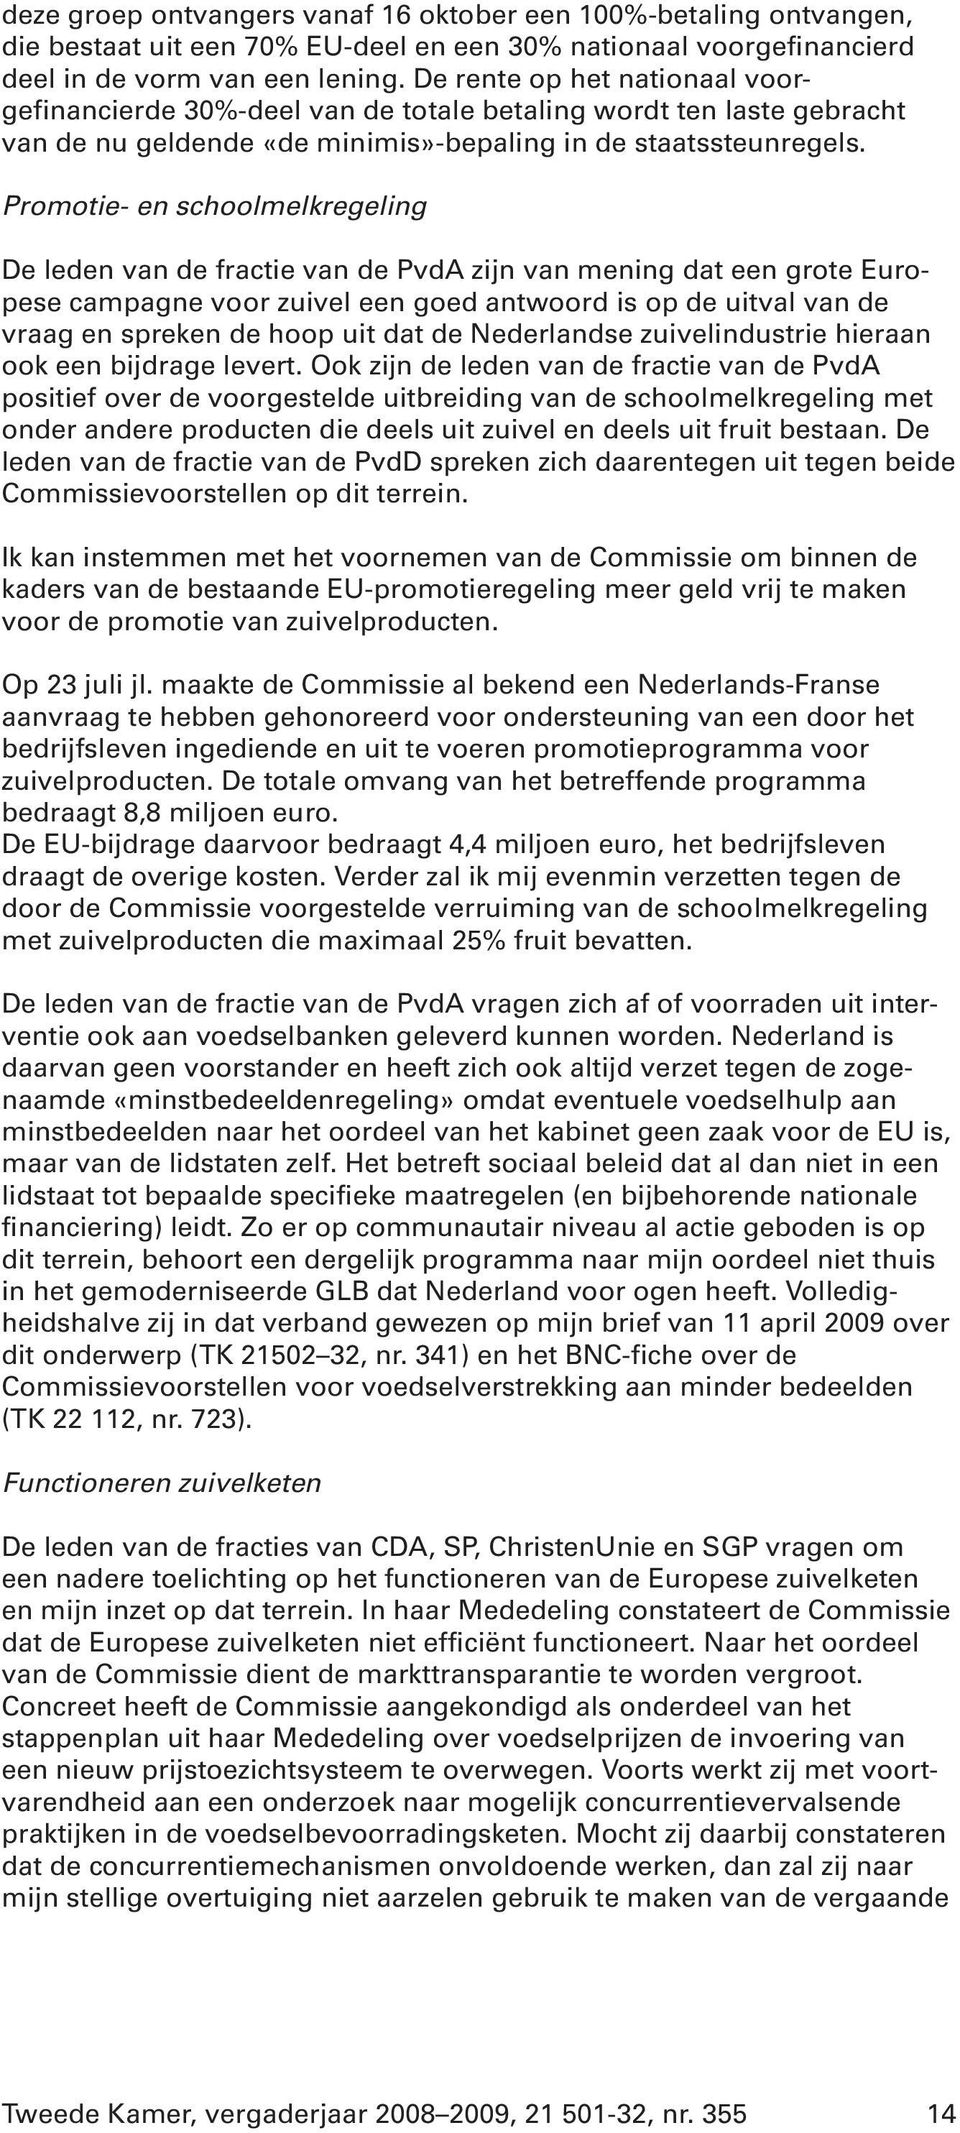 Promotie- en schoolmelkregeling De leden van de fractie van de PvdA zijn van mening dat een grote Europese campagne voor zuivel een goed antwoord is op de uitval van de vraag en spreken de hoop uit